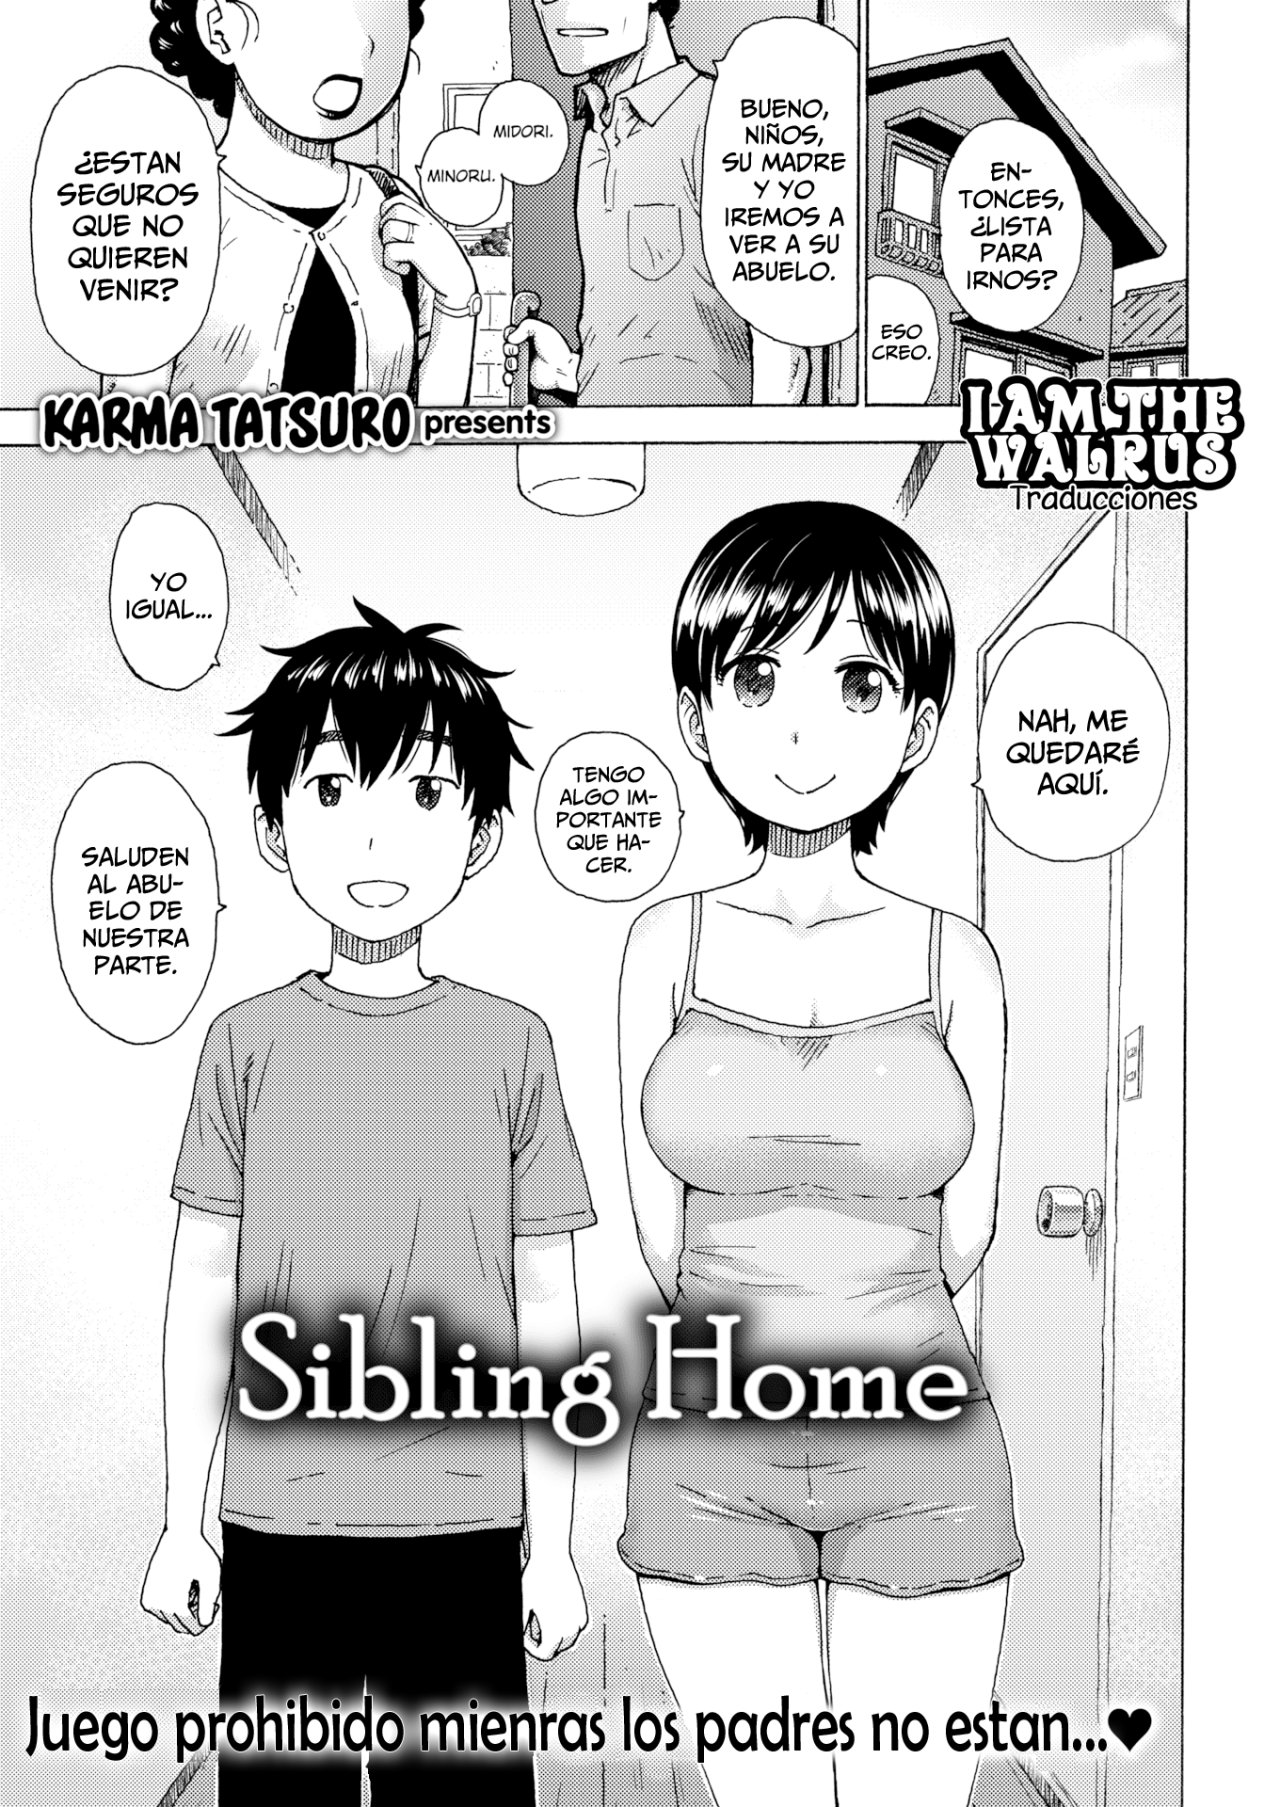 Sibling Home - 1